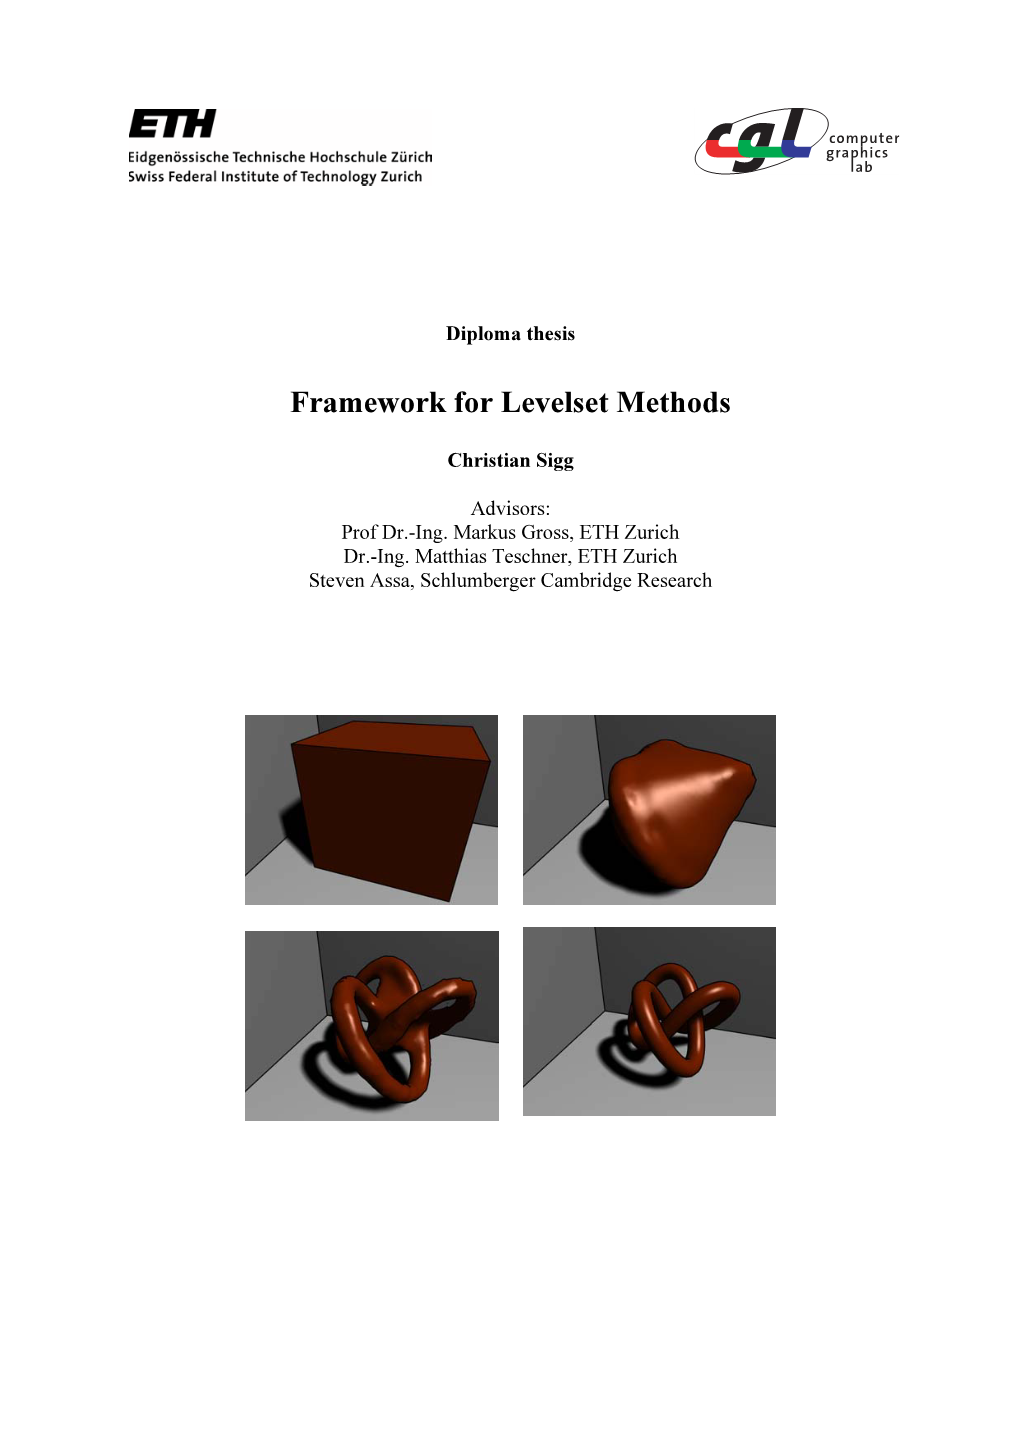 Framework for Levelset Methods